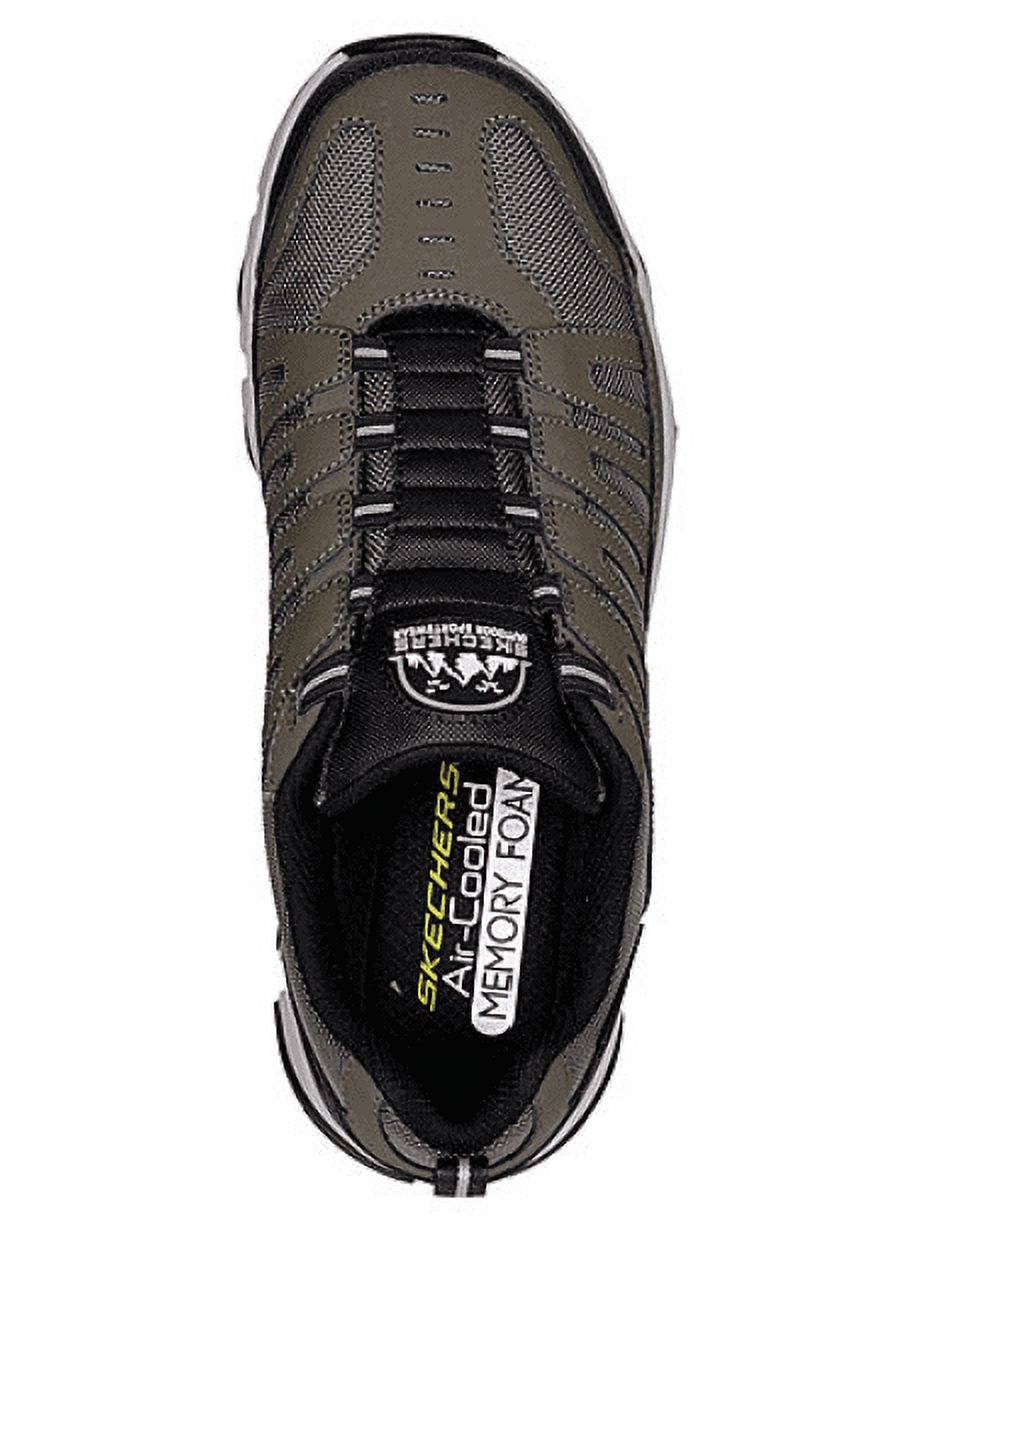 Skechers Men's Crossbar Slip-on Sneaker, Wide Width Available - image 3 of 4